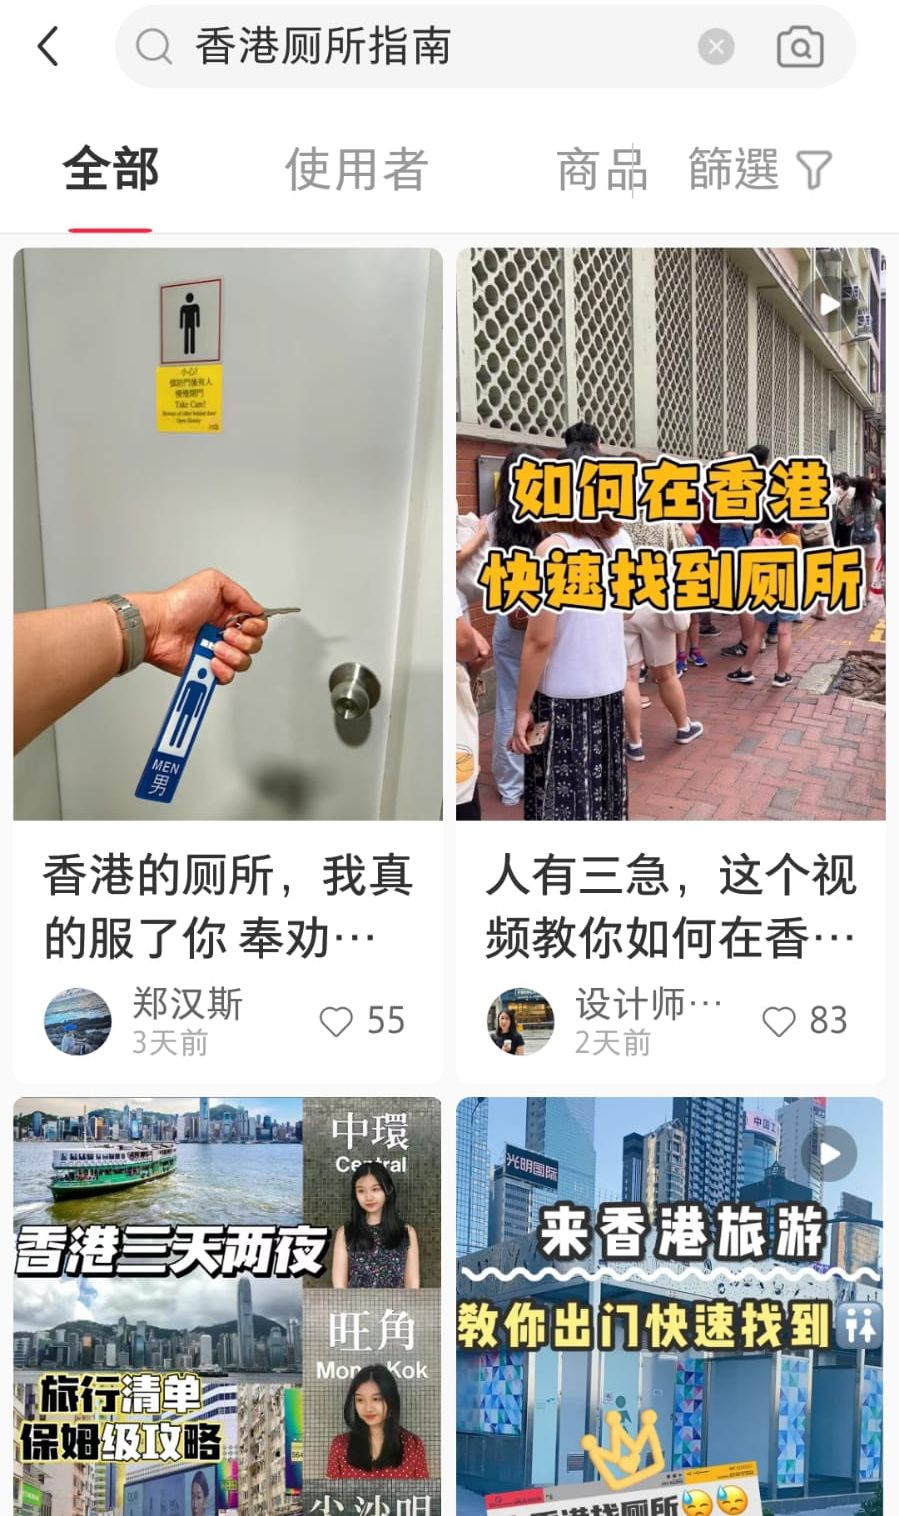 若在小红书输入「香港厕所」等关键字，会发现原来不少内地网友都制作了各式各样关于在香港寻找厕所的实用贴士